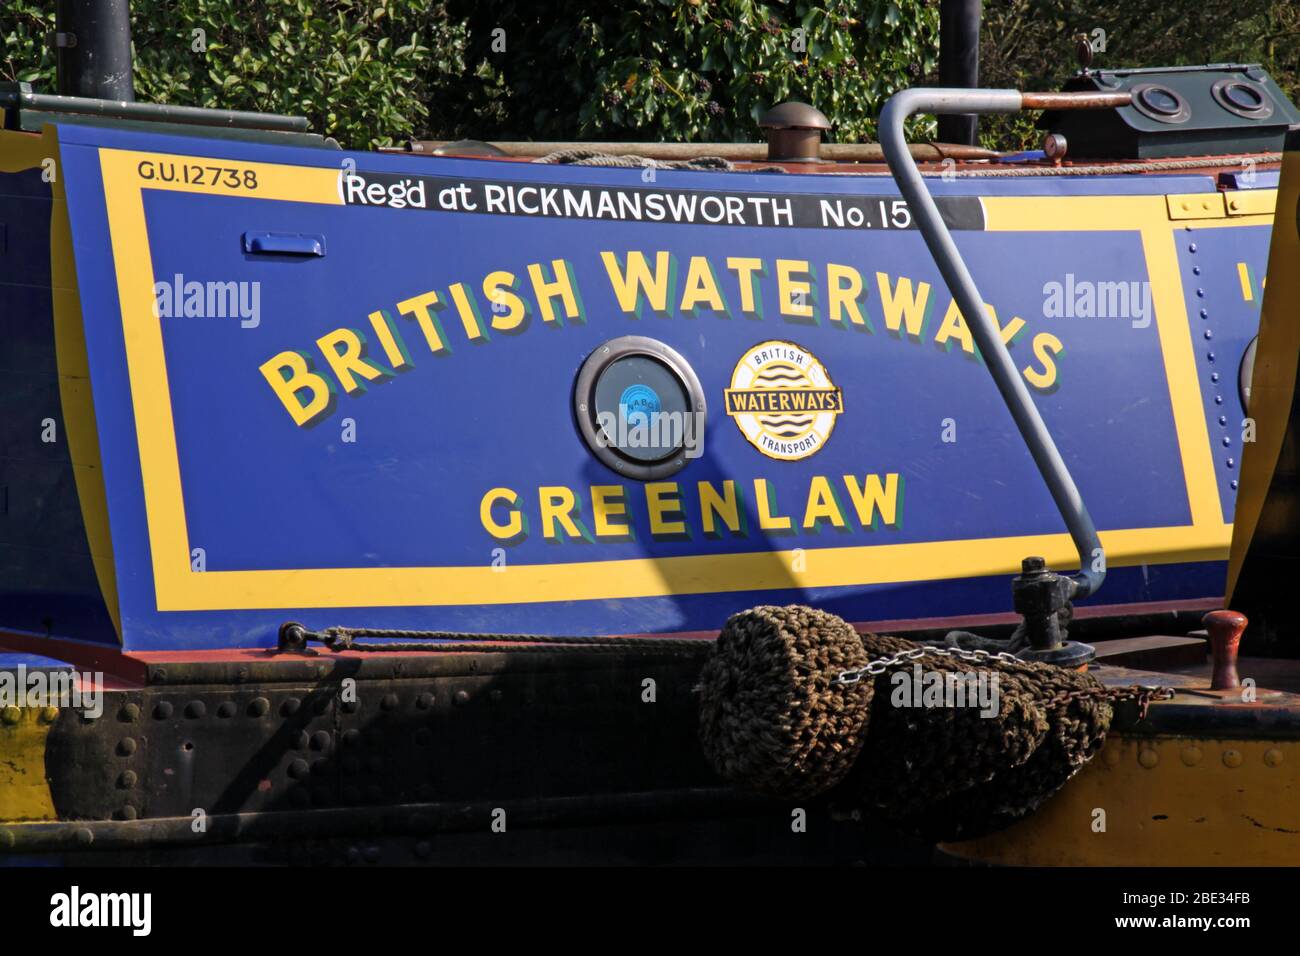 British Canal & River Trust, funktionierende Kanalbargenboote, Northwich, Cheshire Ring, British Waterways Greenlaw, Lostock, Cheshire, England, Großbritannien Stockfoto